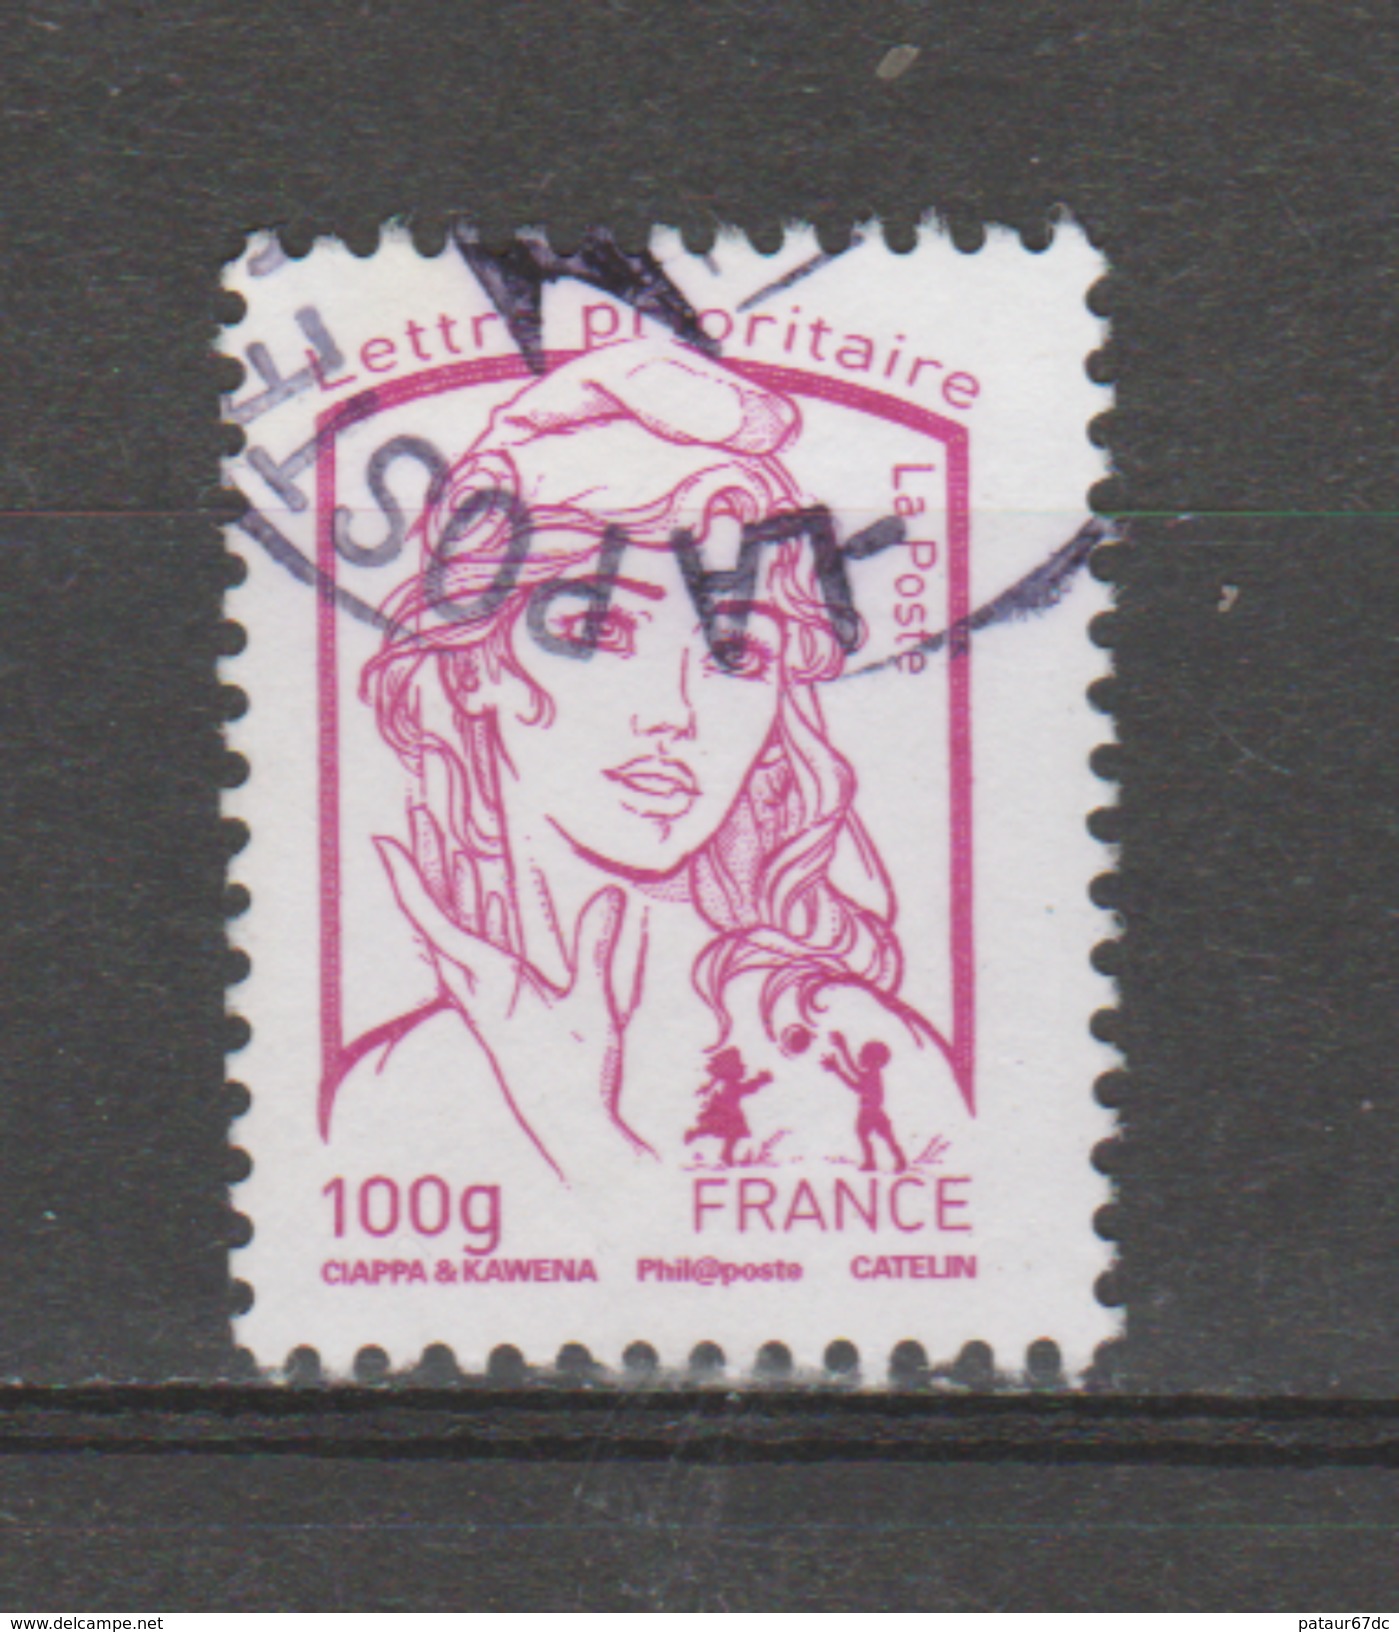 FRANCE / 2013 / Y&T N° 4772 : Ciappa LP 100g (de Feuille Gommée) - Choisi - Cachet Rond - Oblitérés